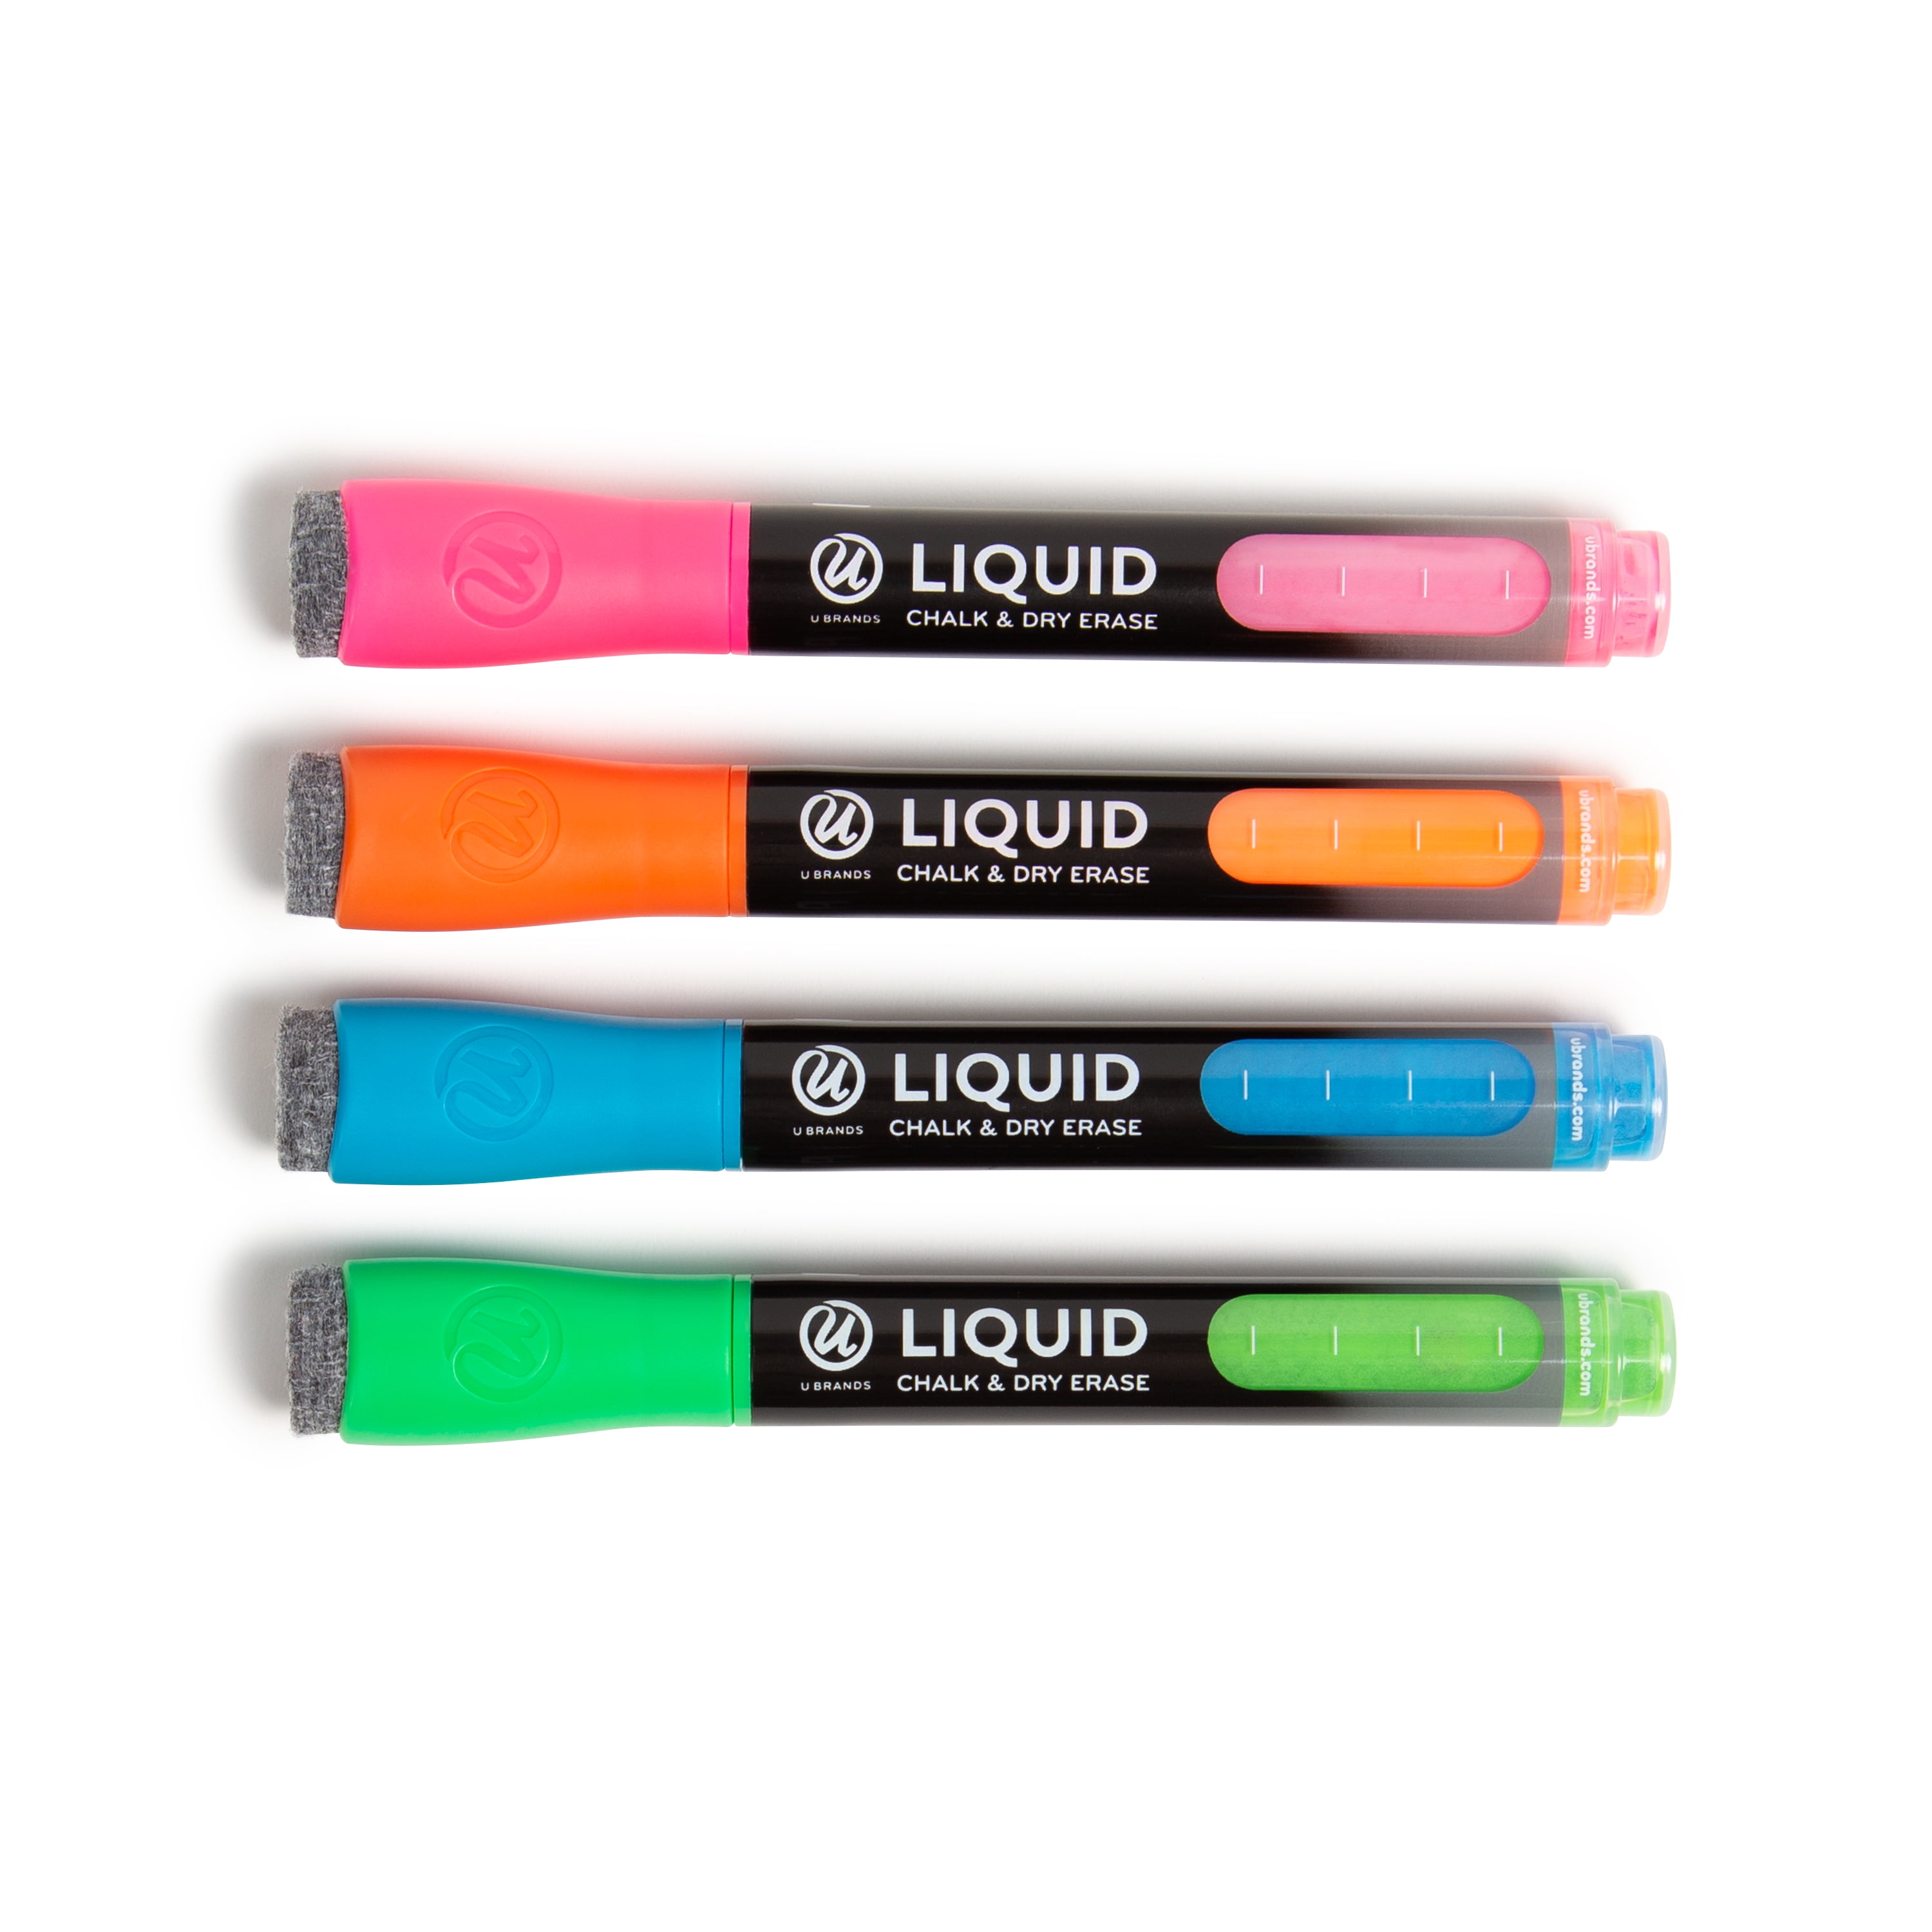 edding® by Securit® Pastel 4 Color 4085 Chalk Marker Set